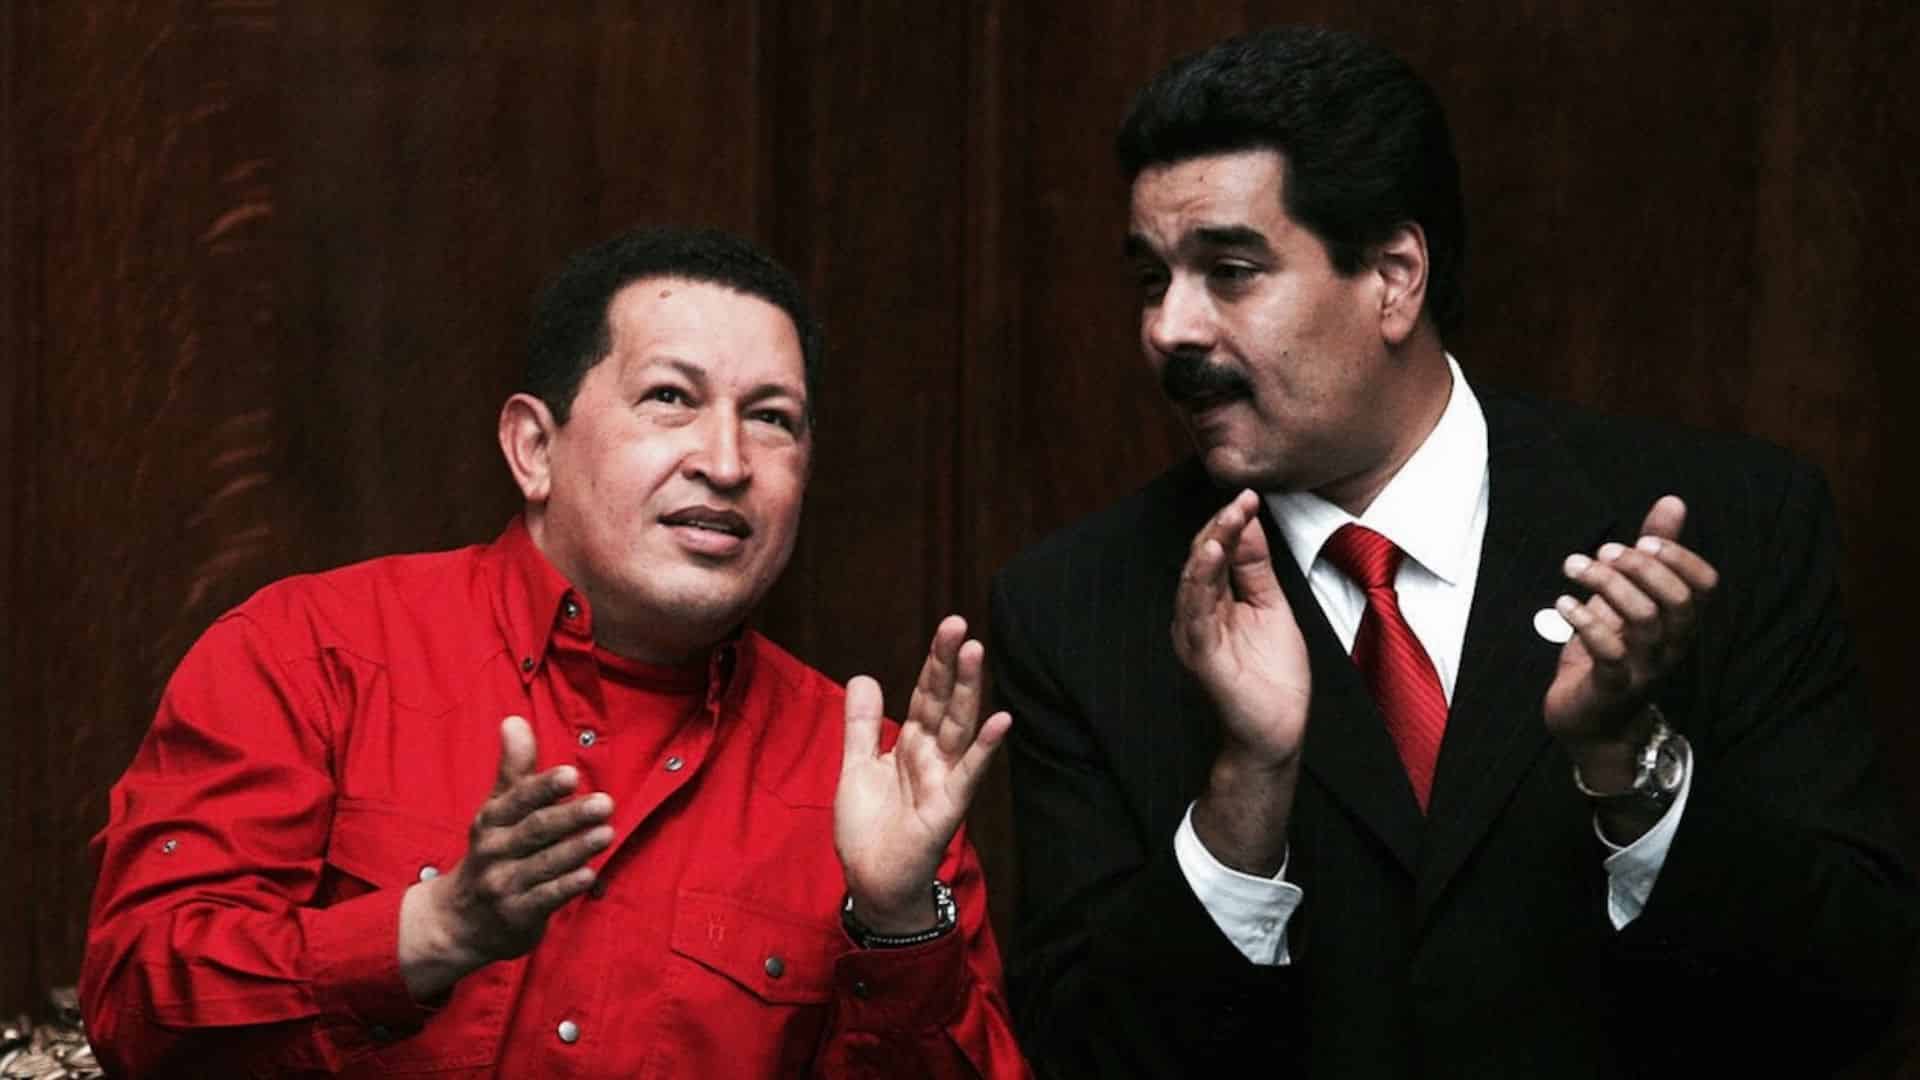 ANÁLISIS: La supervivencia política de Nicolás Maduro